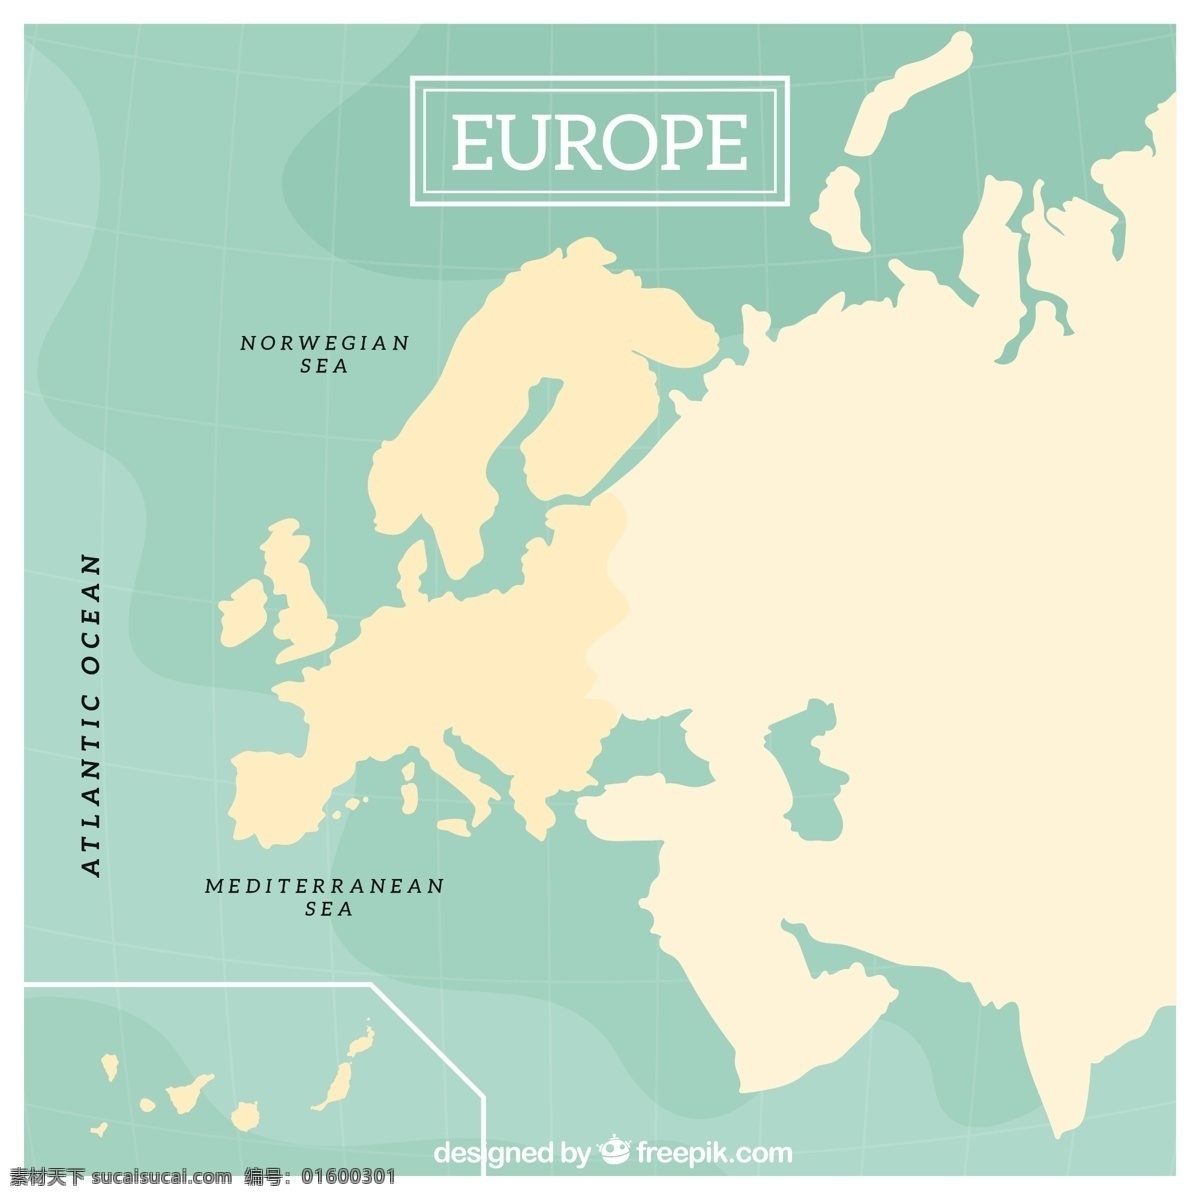 蓝色 背景 欧洲 地图 矢量 蓝色背景 欧洲地图 矢量素材